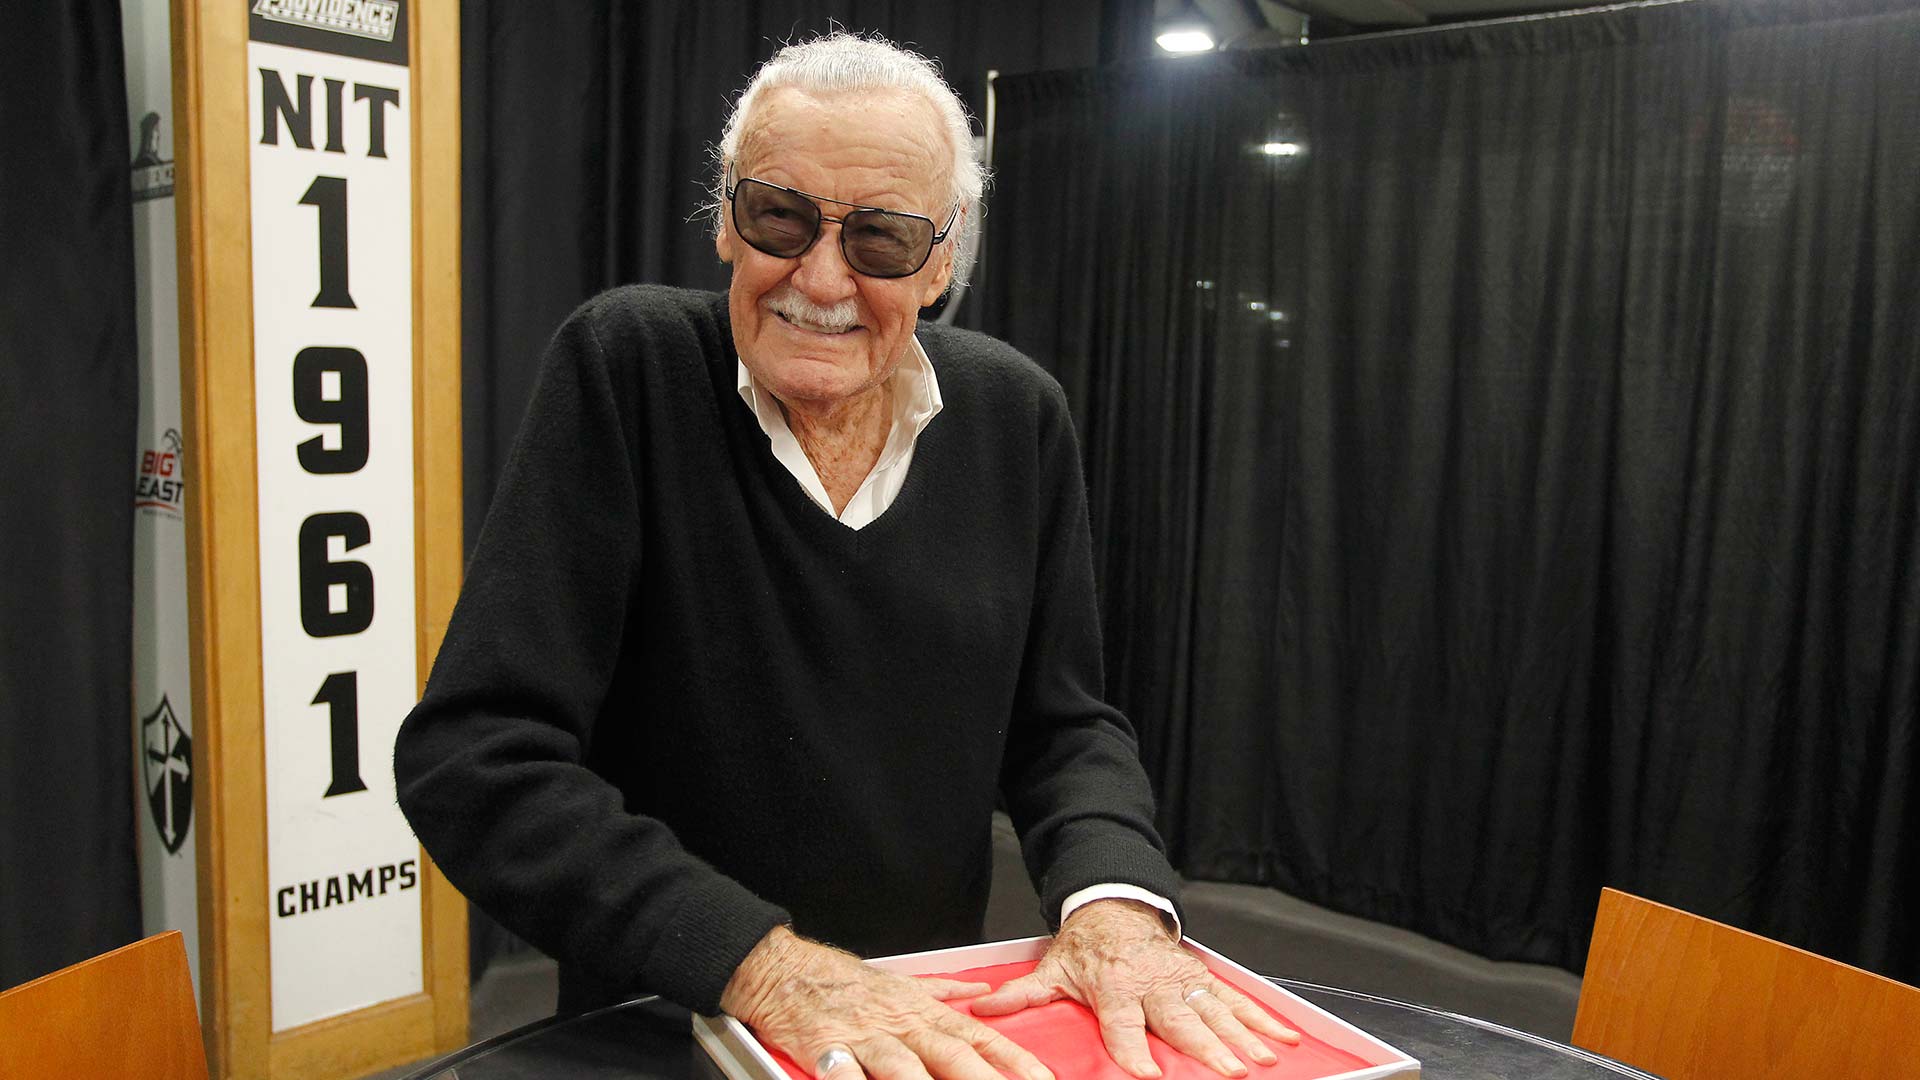 La leyenda del cómic Stan Lee muere a los 95 años